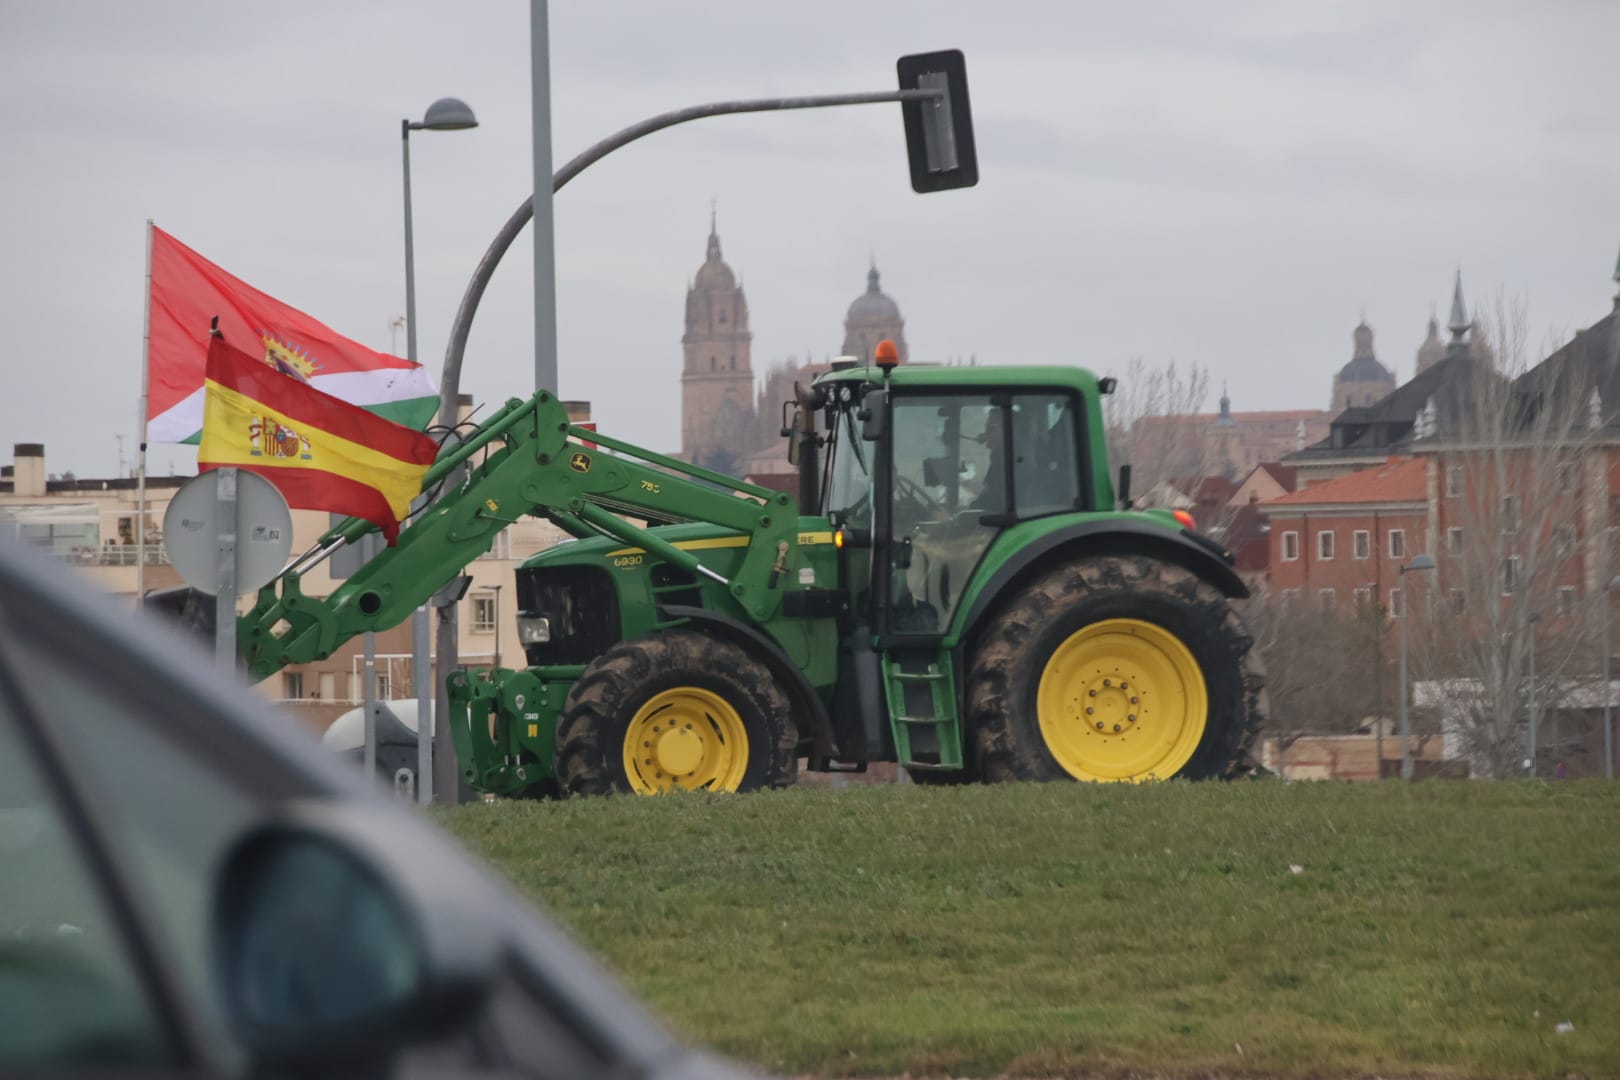 Tractorada en Salamanca este miércoles, 7 de febrero (8)